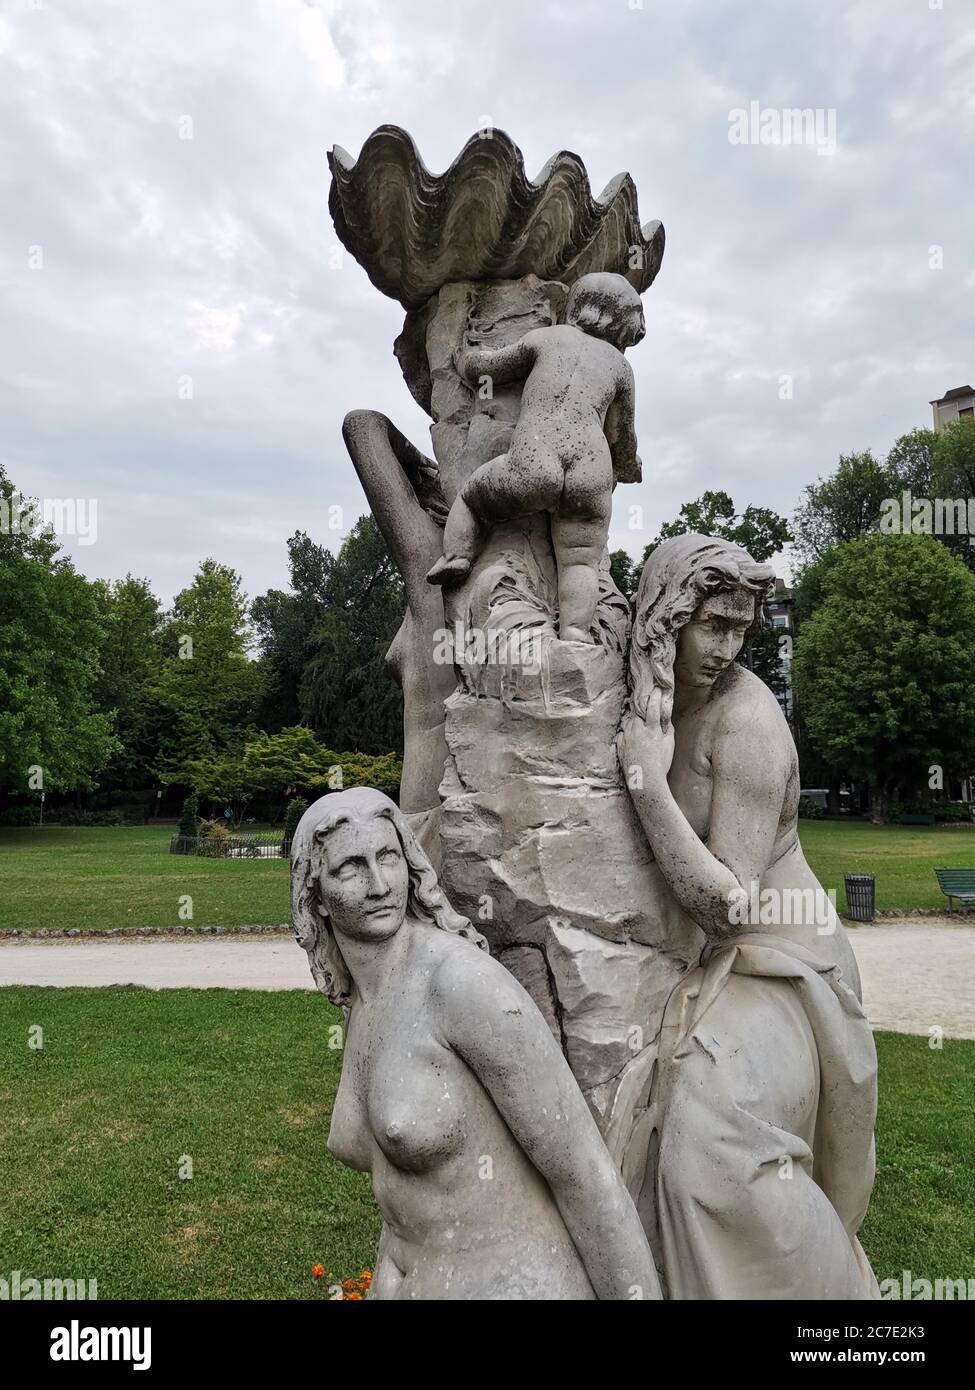 Fontana delle Naiadi Giardini Pubblici Piazza Roma Cremona Stock Photo